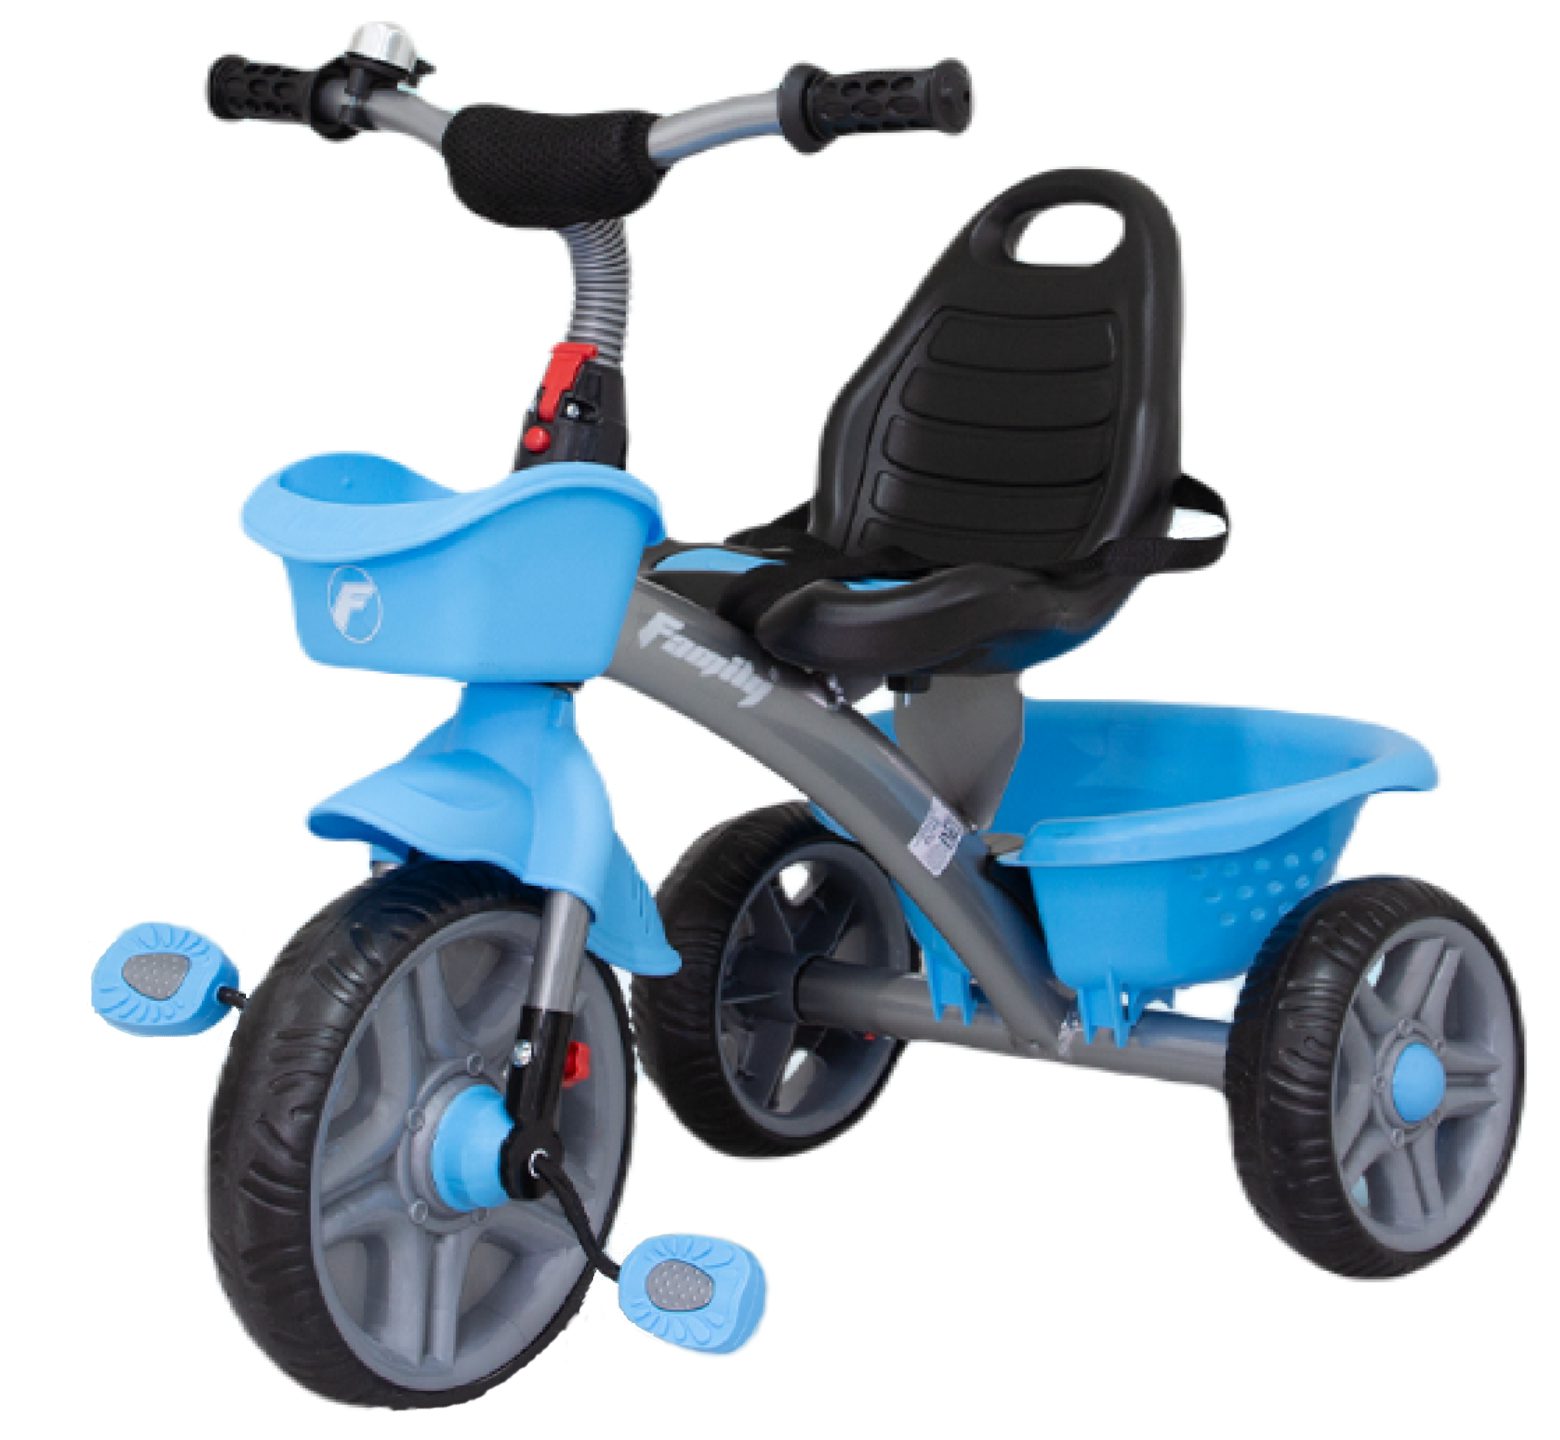 Παιδικό τρίκυκλο ποδήλατο σε 2 χρώματα μπλε ή κόκκινο